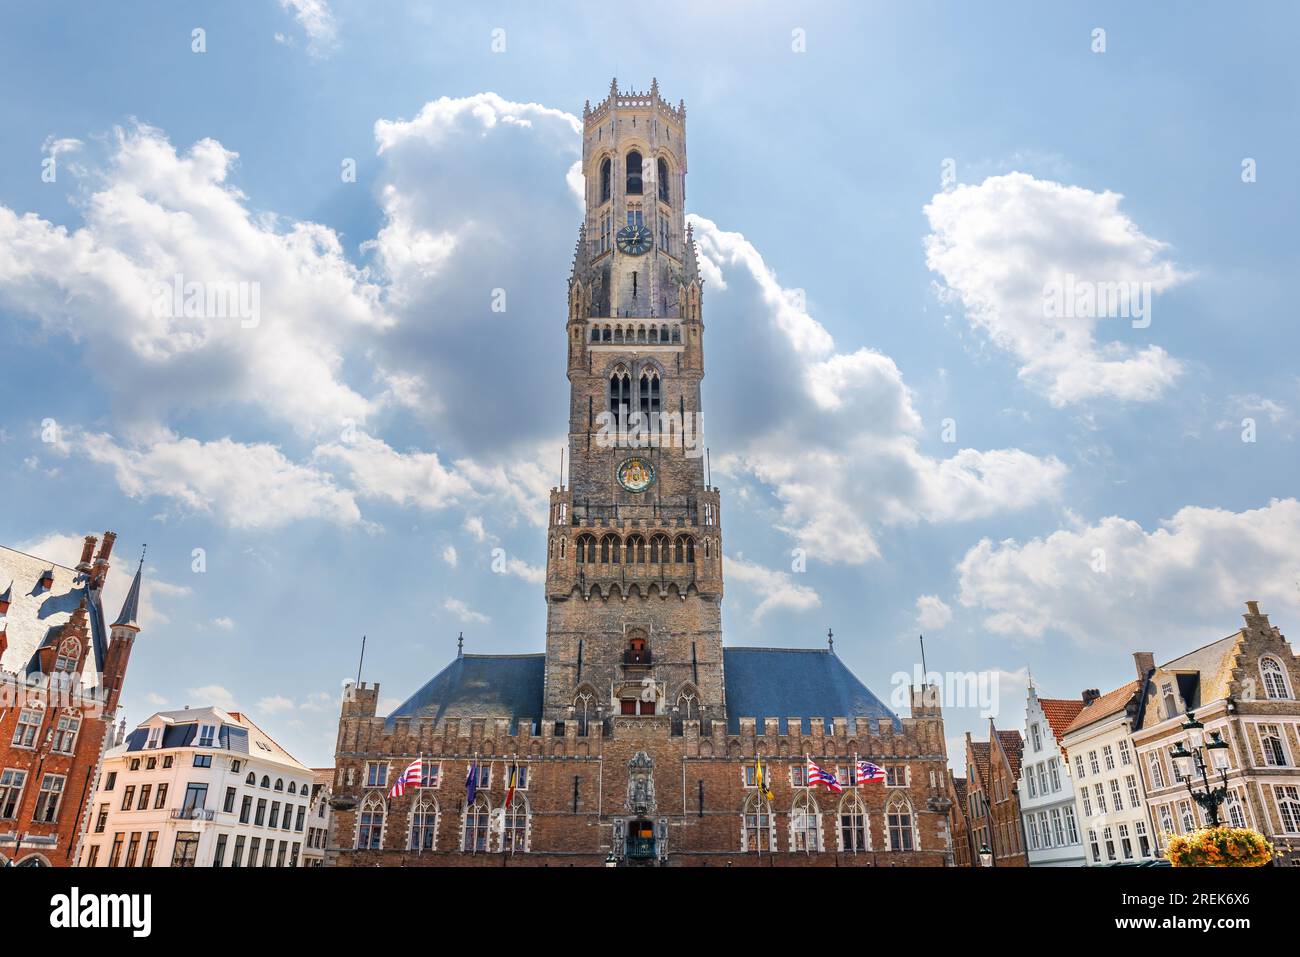 Il campanile di Bruges, un campanile medievale nel centro di Bruges, in Belgio. Uno dei simboli più importanti della città, il campanile ospitava una t Foto Stock